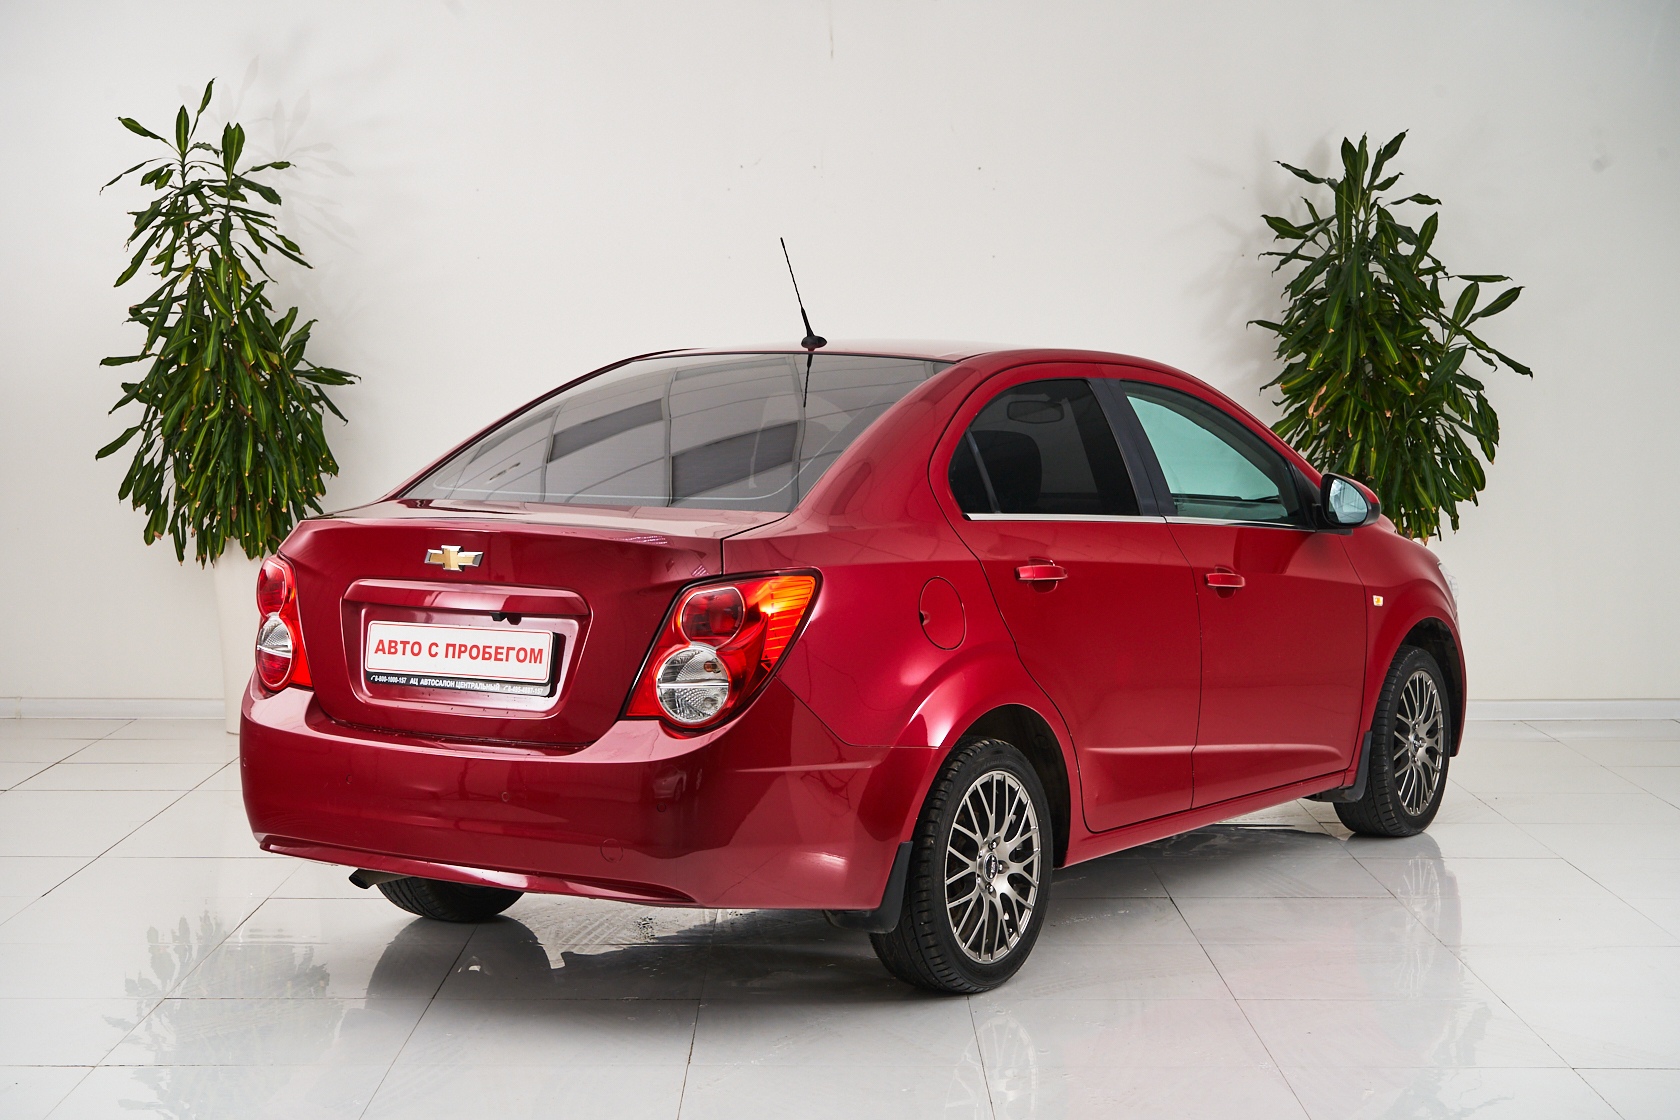 2014 Chevrolet Aveo II №5568757, Красный, 439000 рублей - вид 5